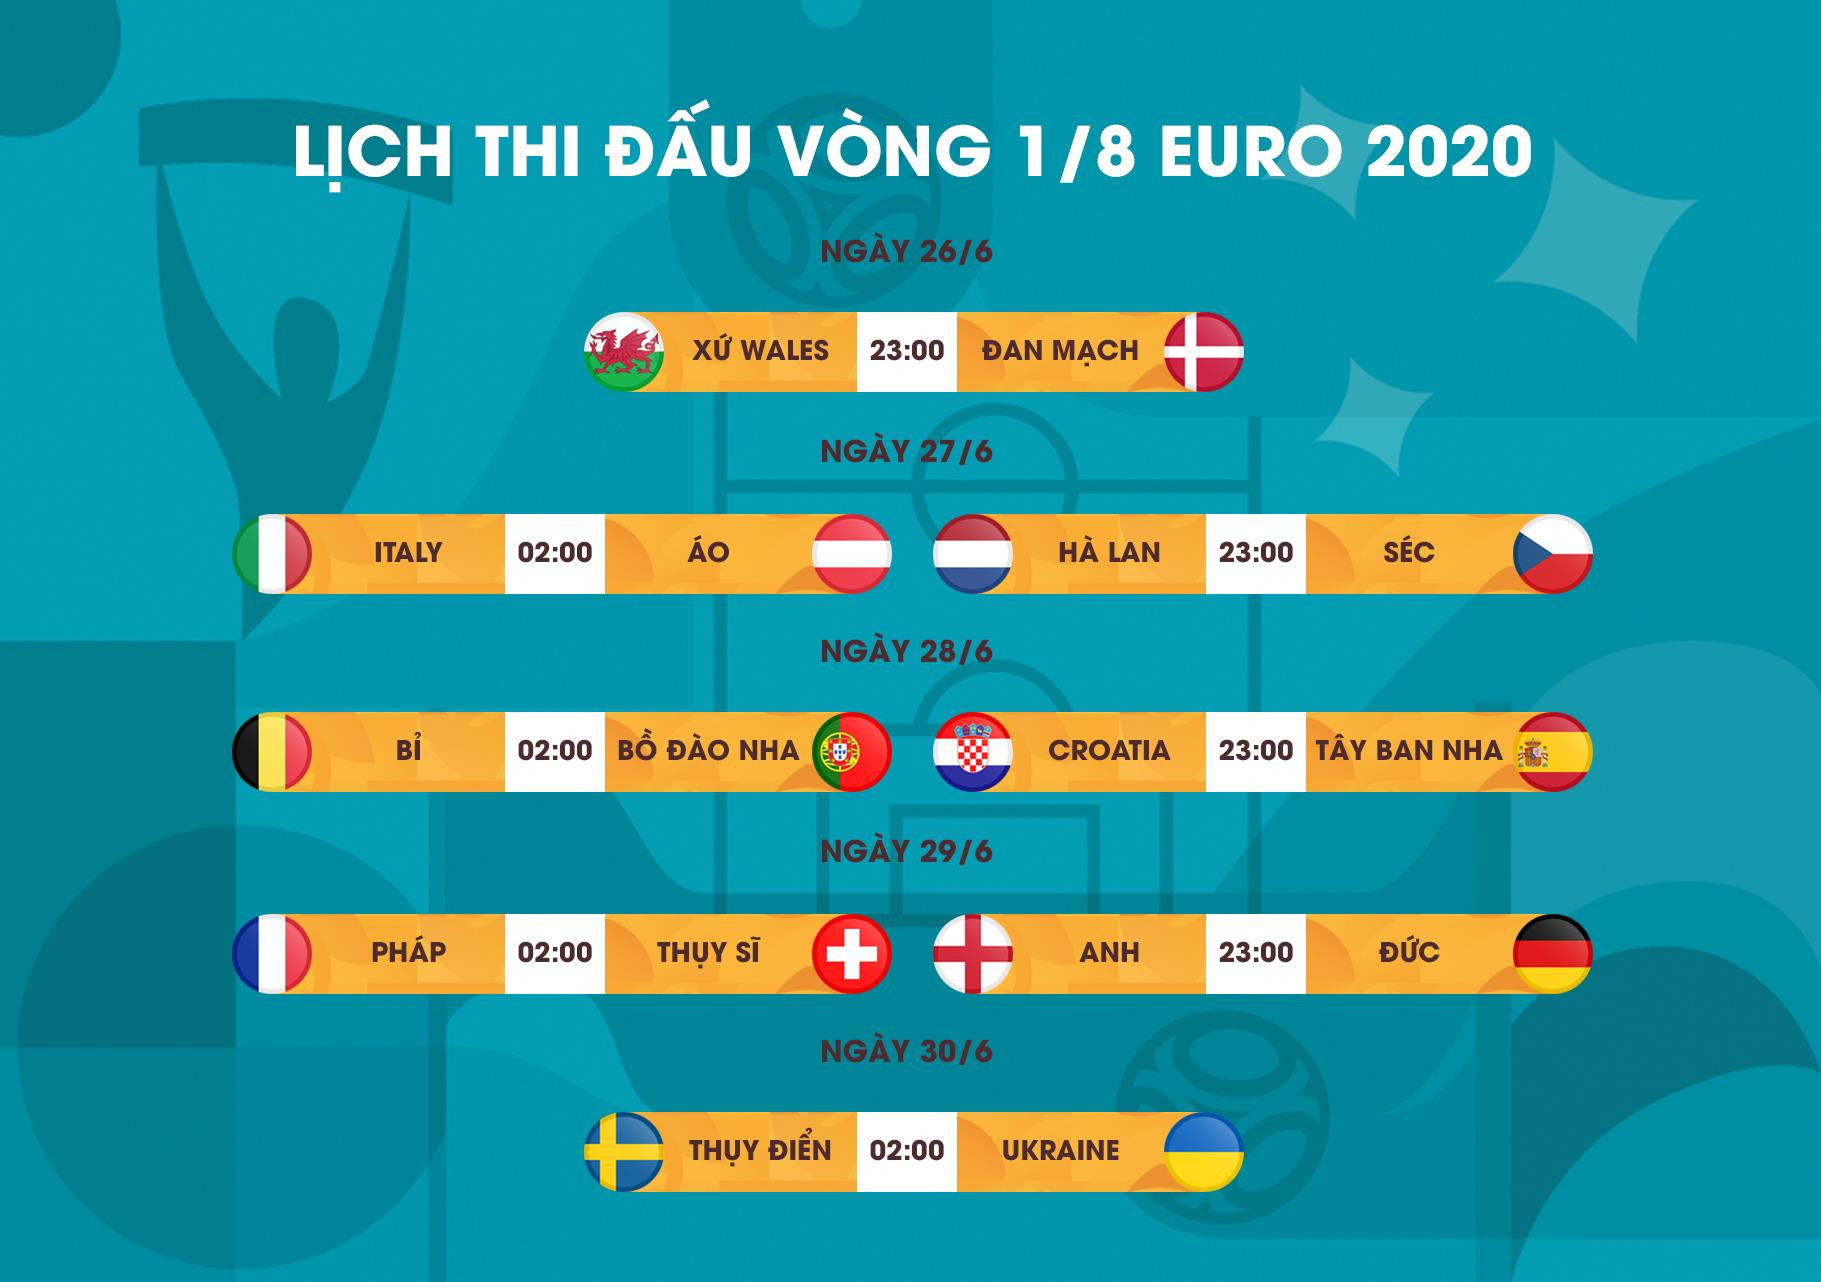 Lịch thi đấu vòng 1/8 EURO 2020 mới nhất: Bỉ vs Bồ Đào Nha, Anh vs Đức - 1